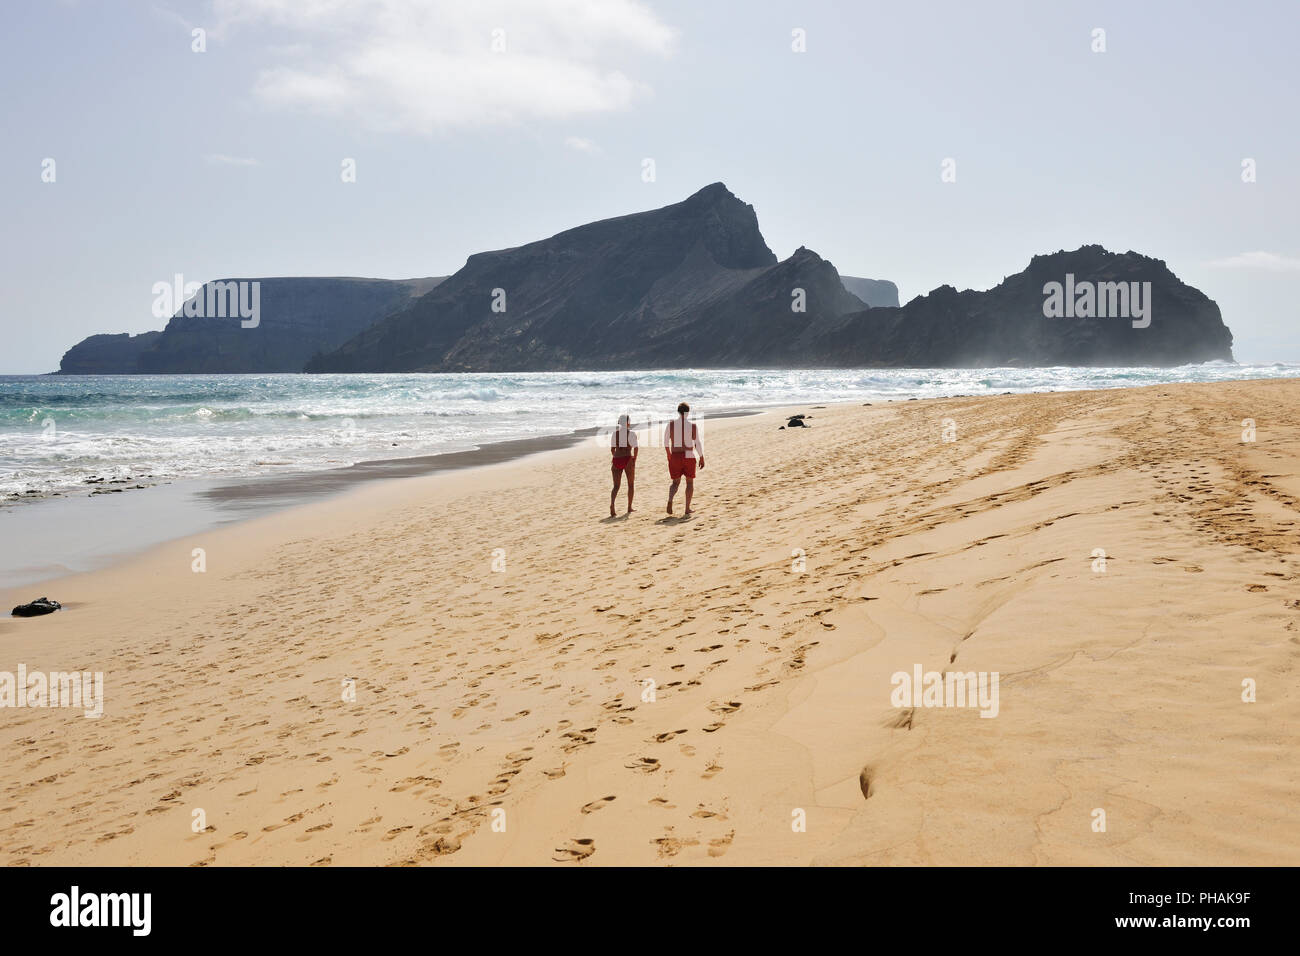 La magnifique plage de sable fin de l'île de Porto Santo, à 9 km de long. Madère, Portugal Banque D'Images